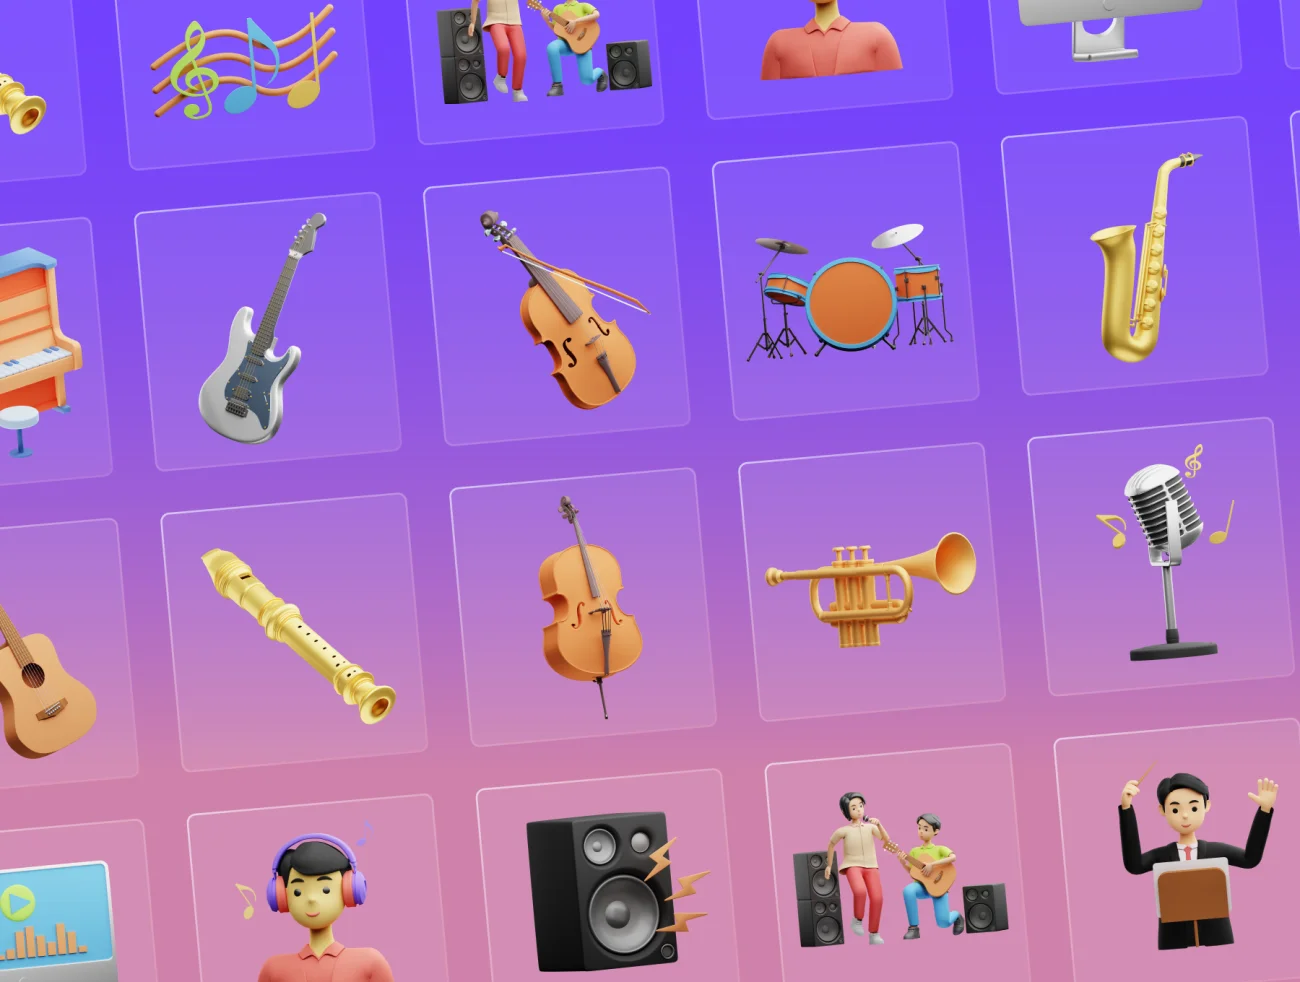 30个3D音乐元素图标 优质的3D音乐元素图标 30 3D Musical Elements Icons figma, blender, psd, figma, lunacy格式-3D/图标-到位啦UI